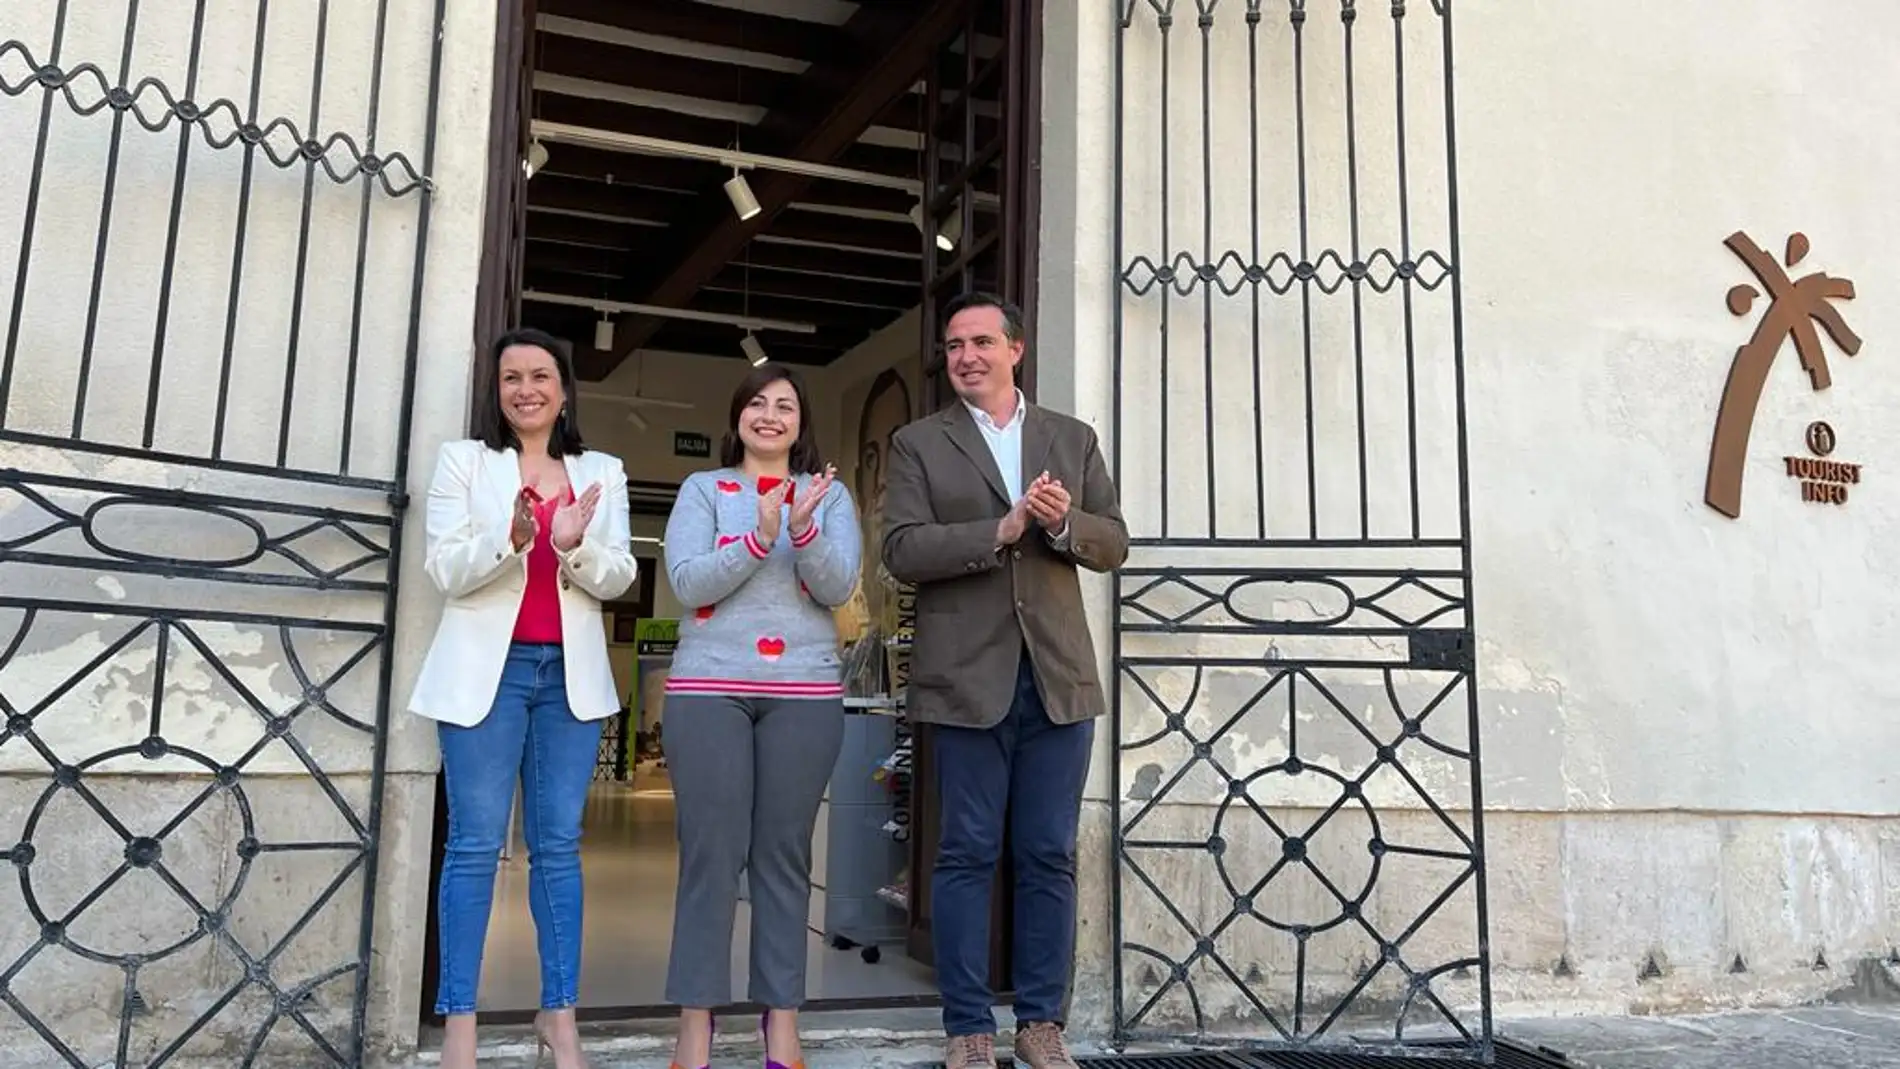  Orihuela abre su nueva Oficina de Turismo en el Palacio Marqués de Arneva